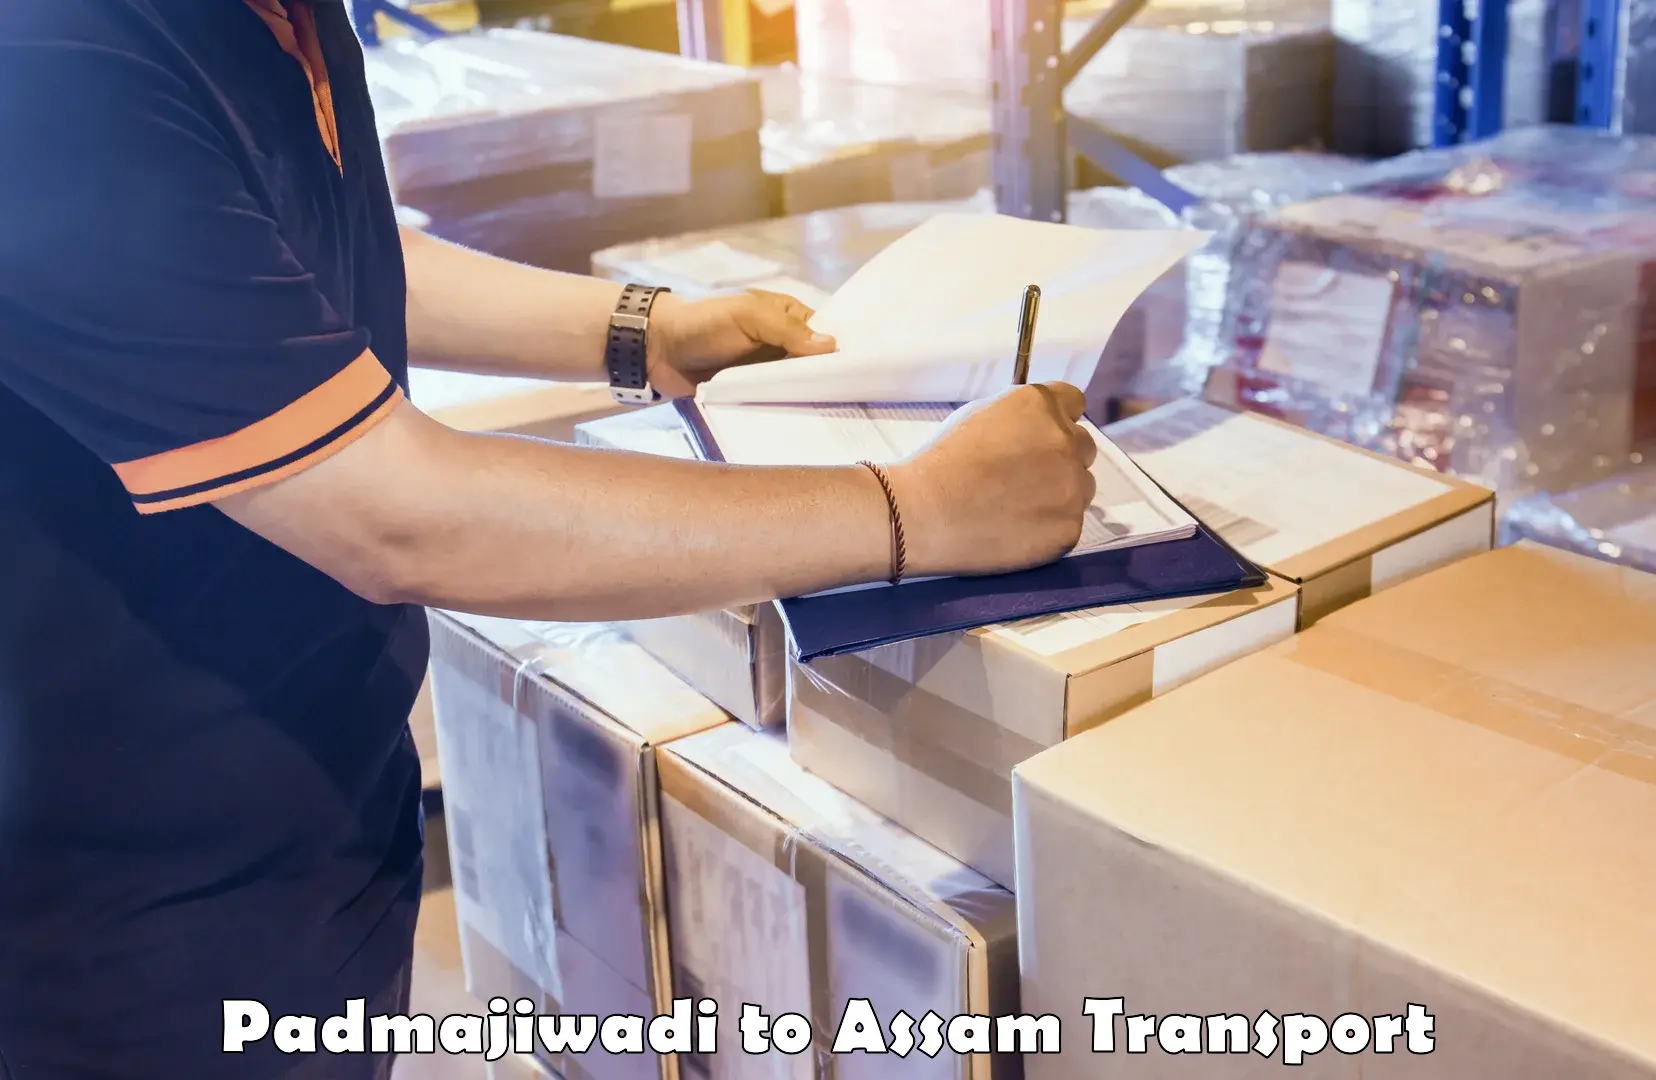 Cargo transport services Padmajiwadi to Guwahati